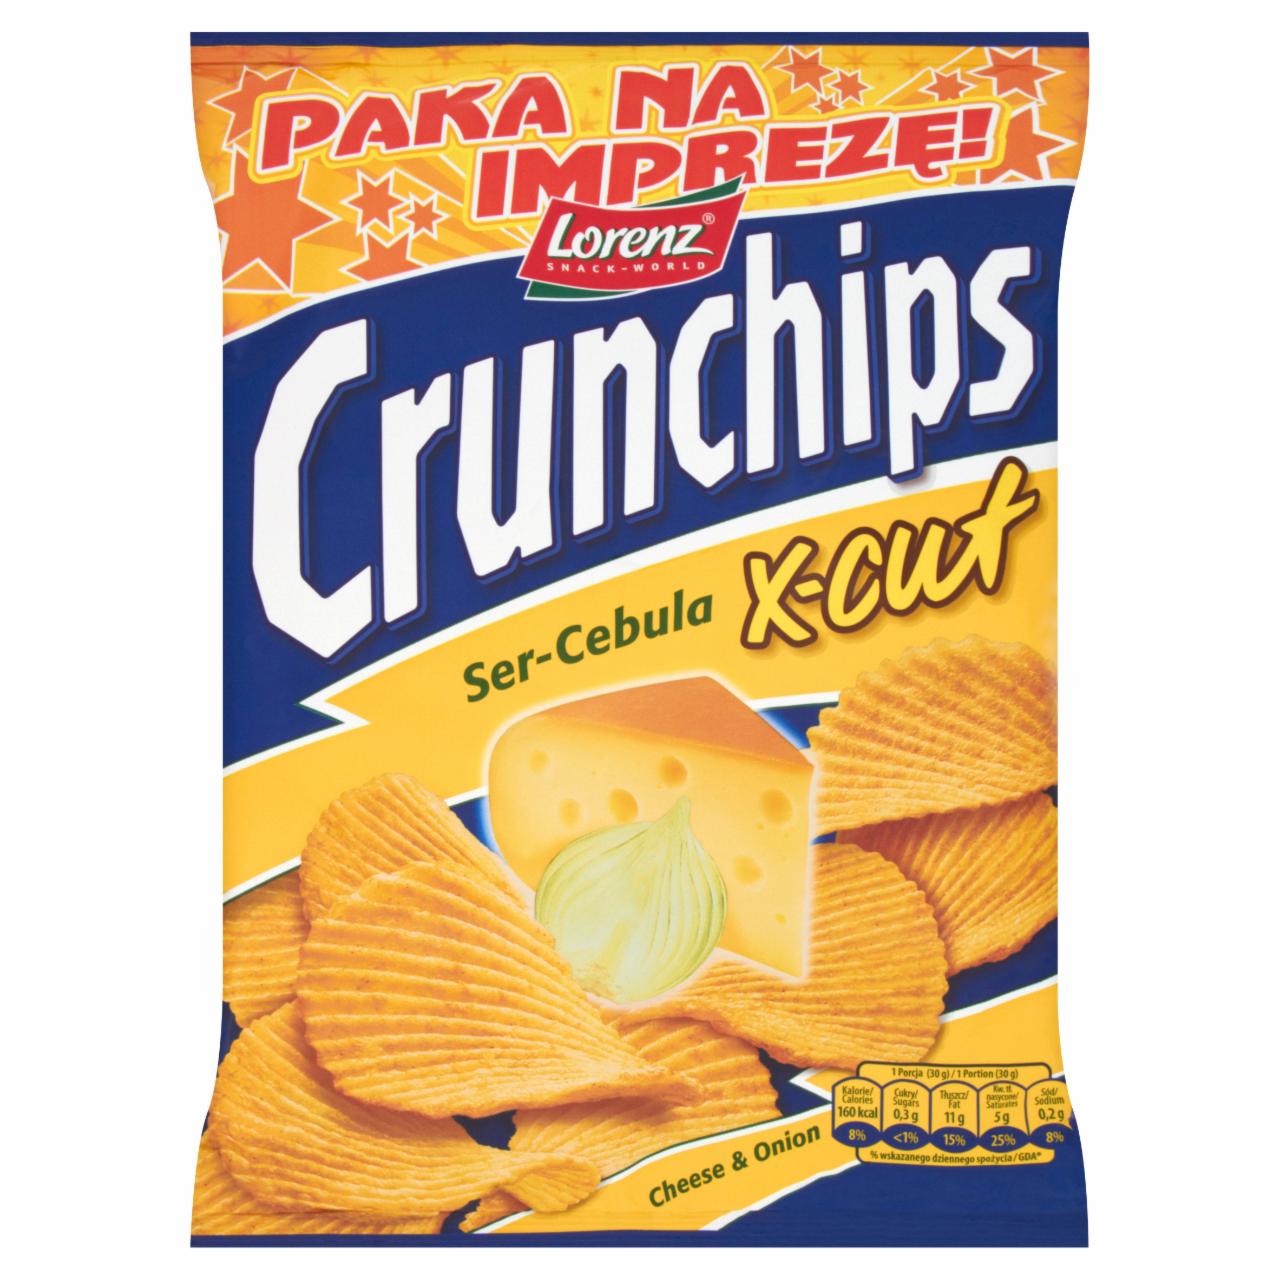 Zdjęcia - Crunchips X-Cut Ser-Cebula Chipsy ziemniaczane 250 g